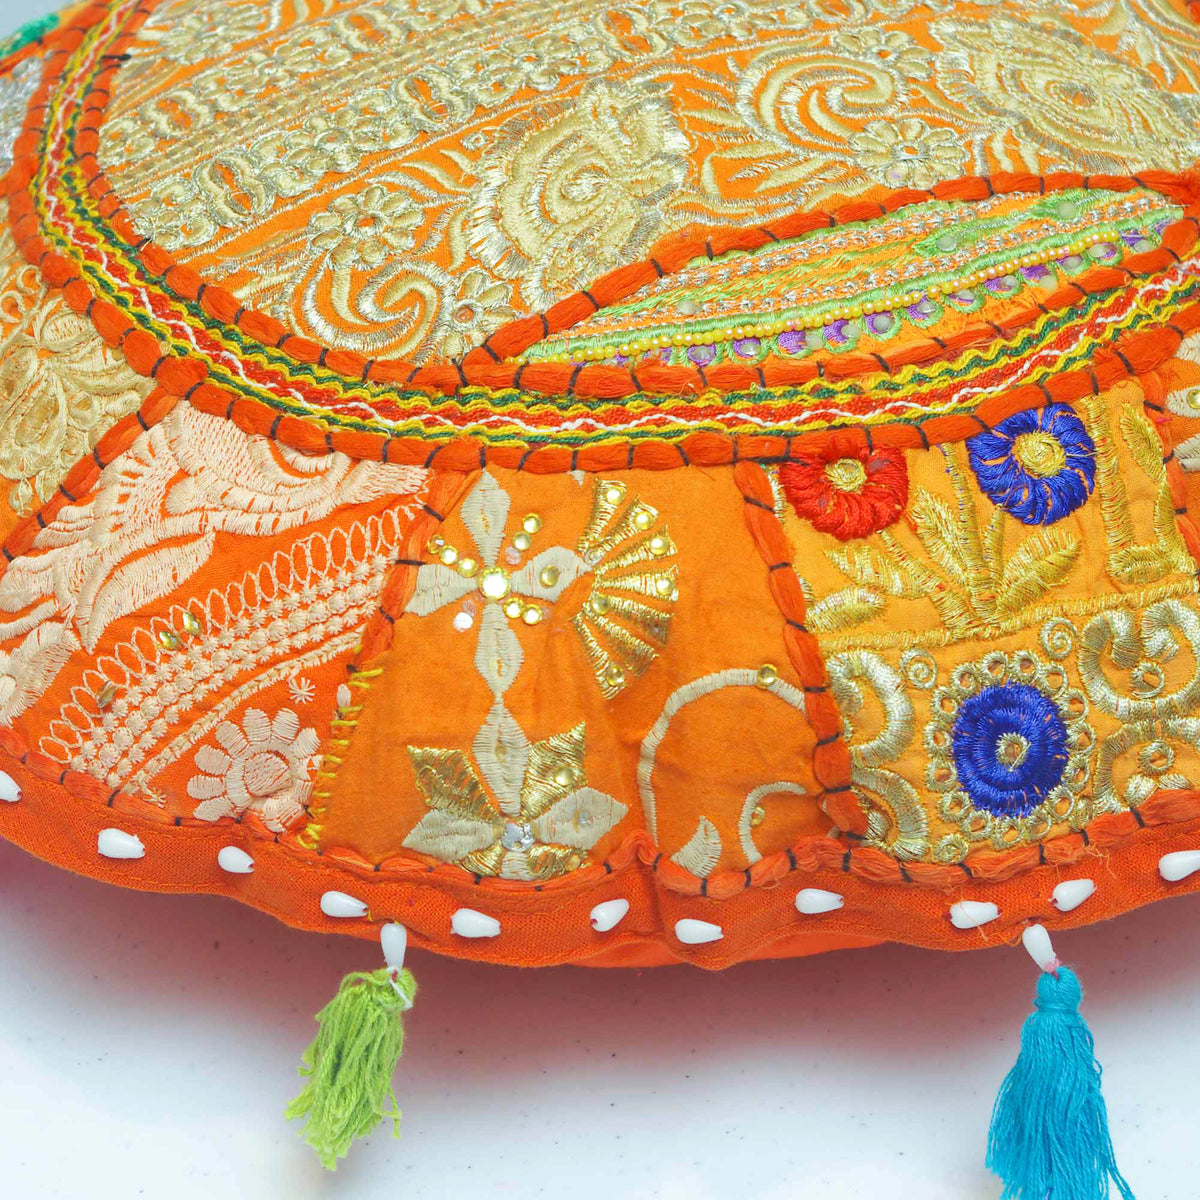 Runder, bodenbestickter Patchwork-Pouf, osmanischer, indischer Vintage-Kissenbezug